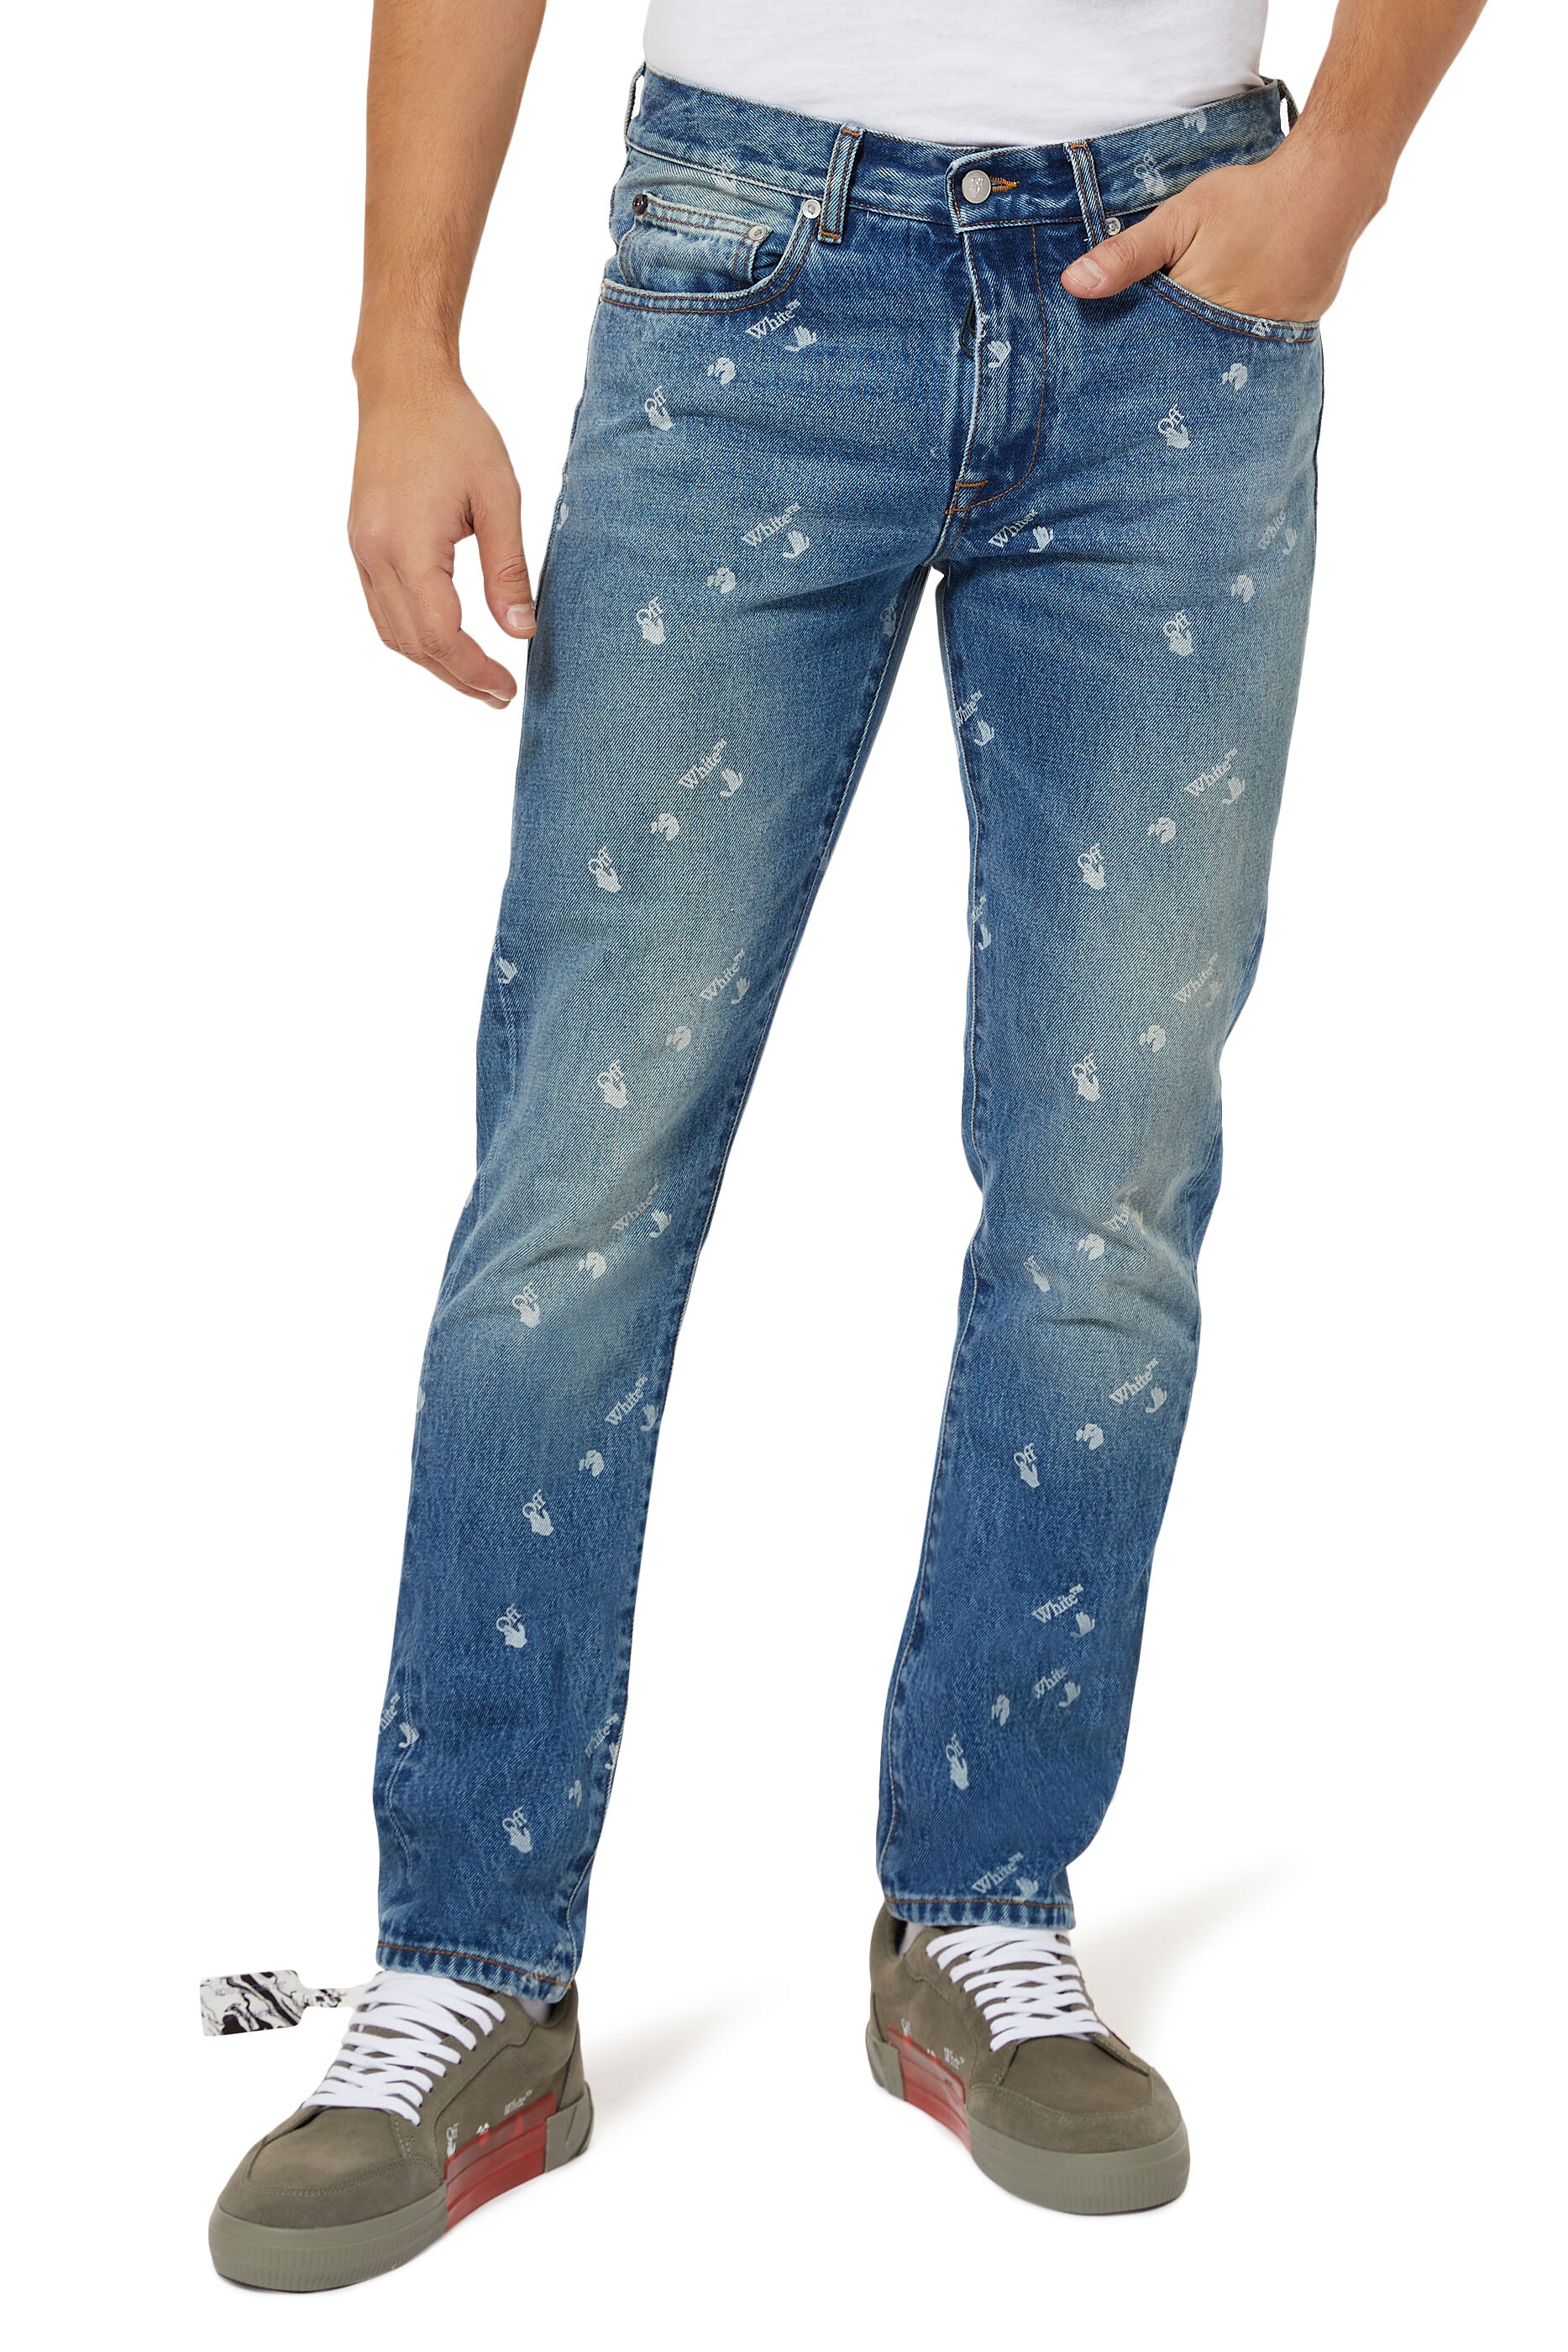 bloomingdales jeans